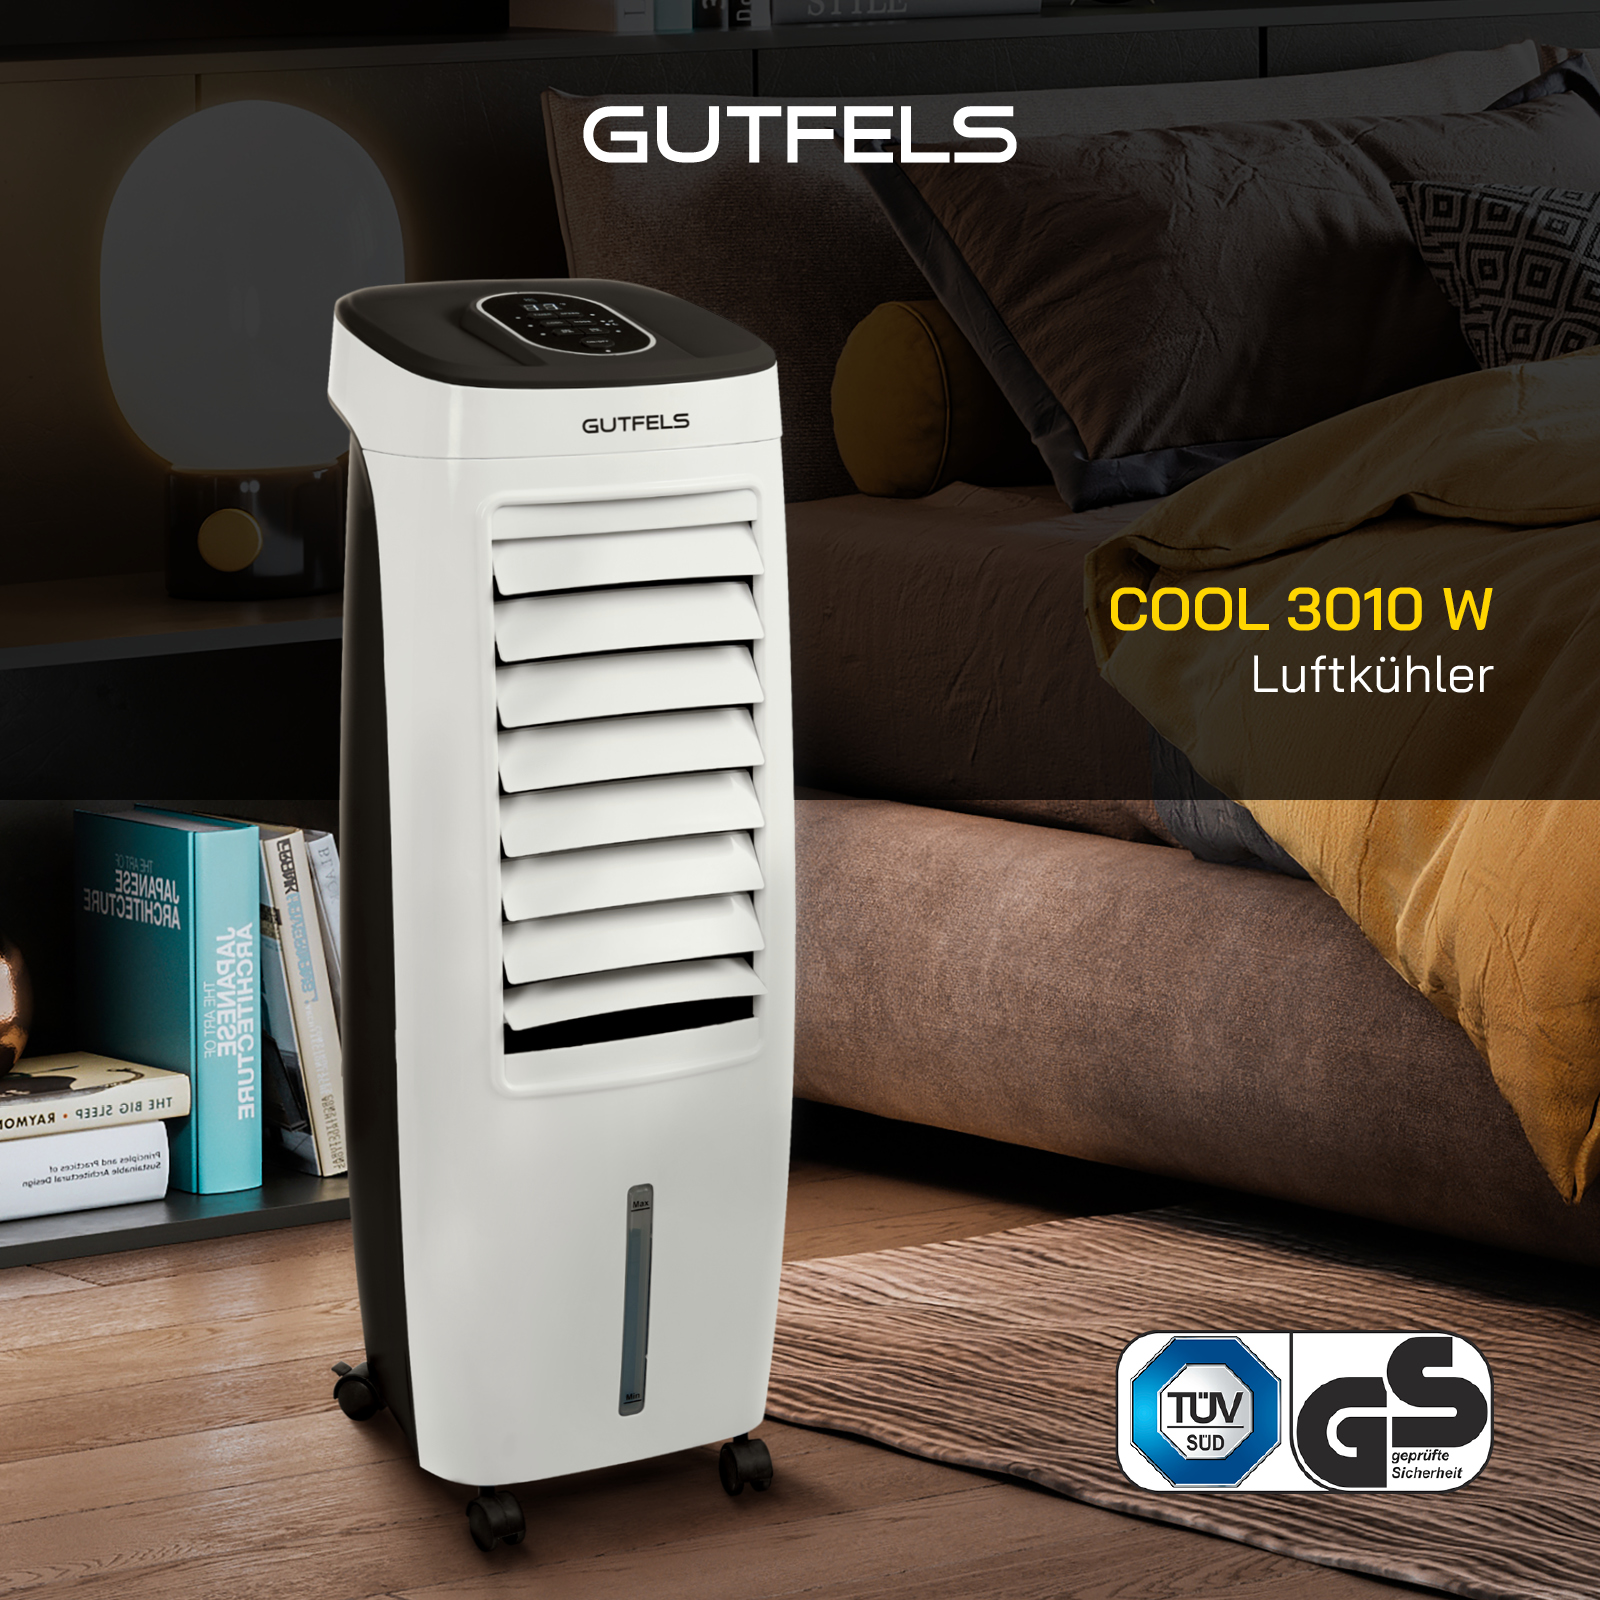 COOL GUTFELS Luftkühler W 3010